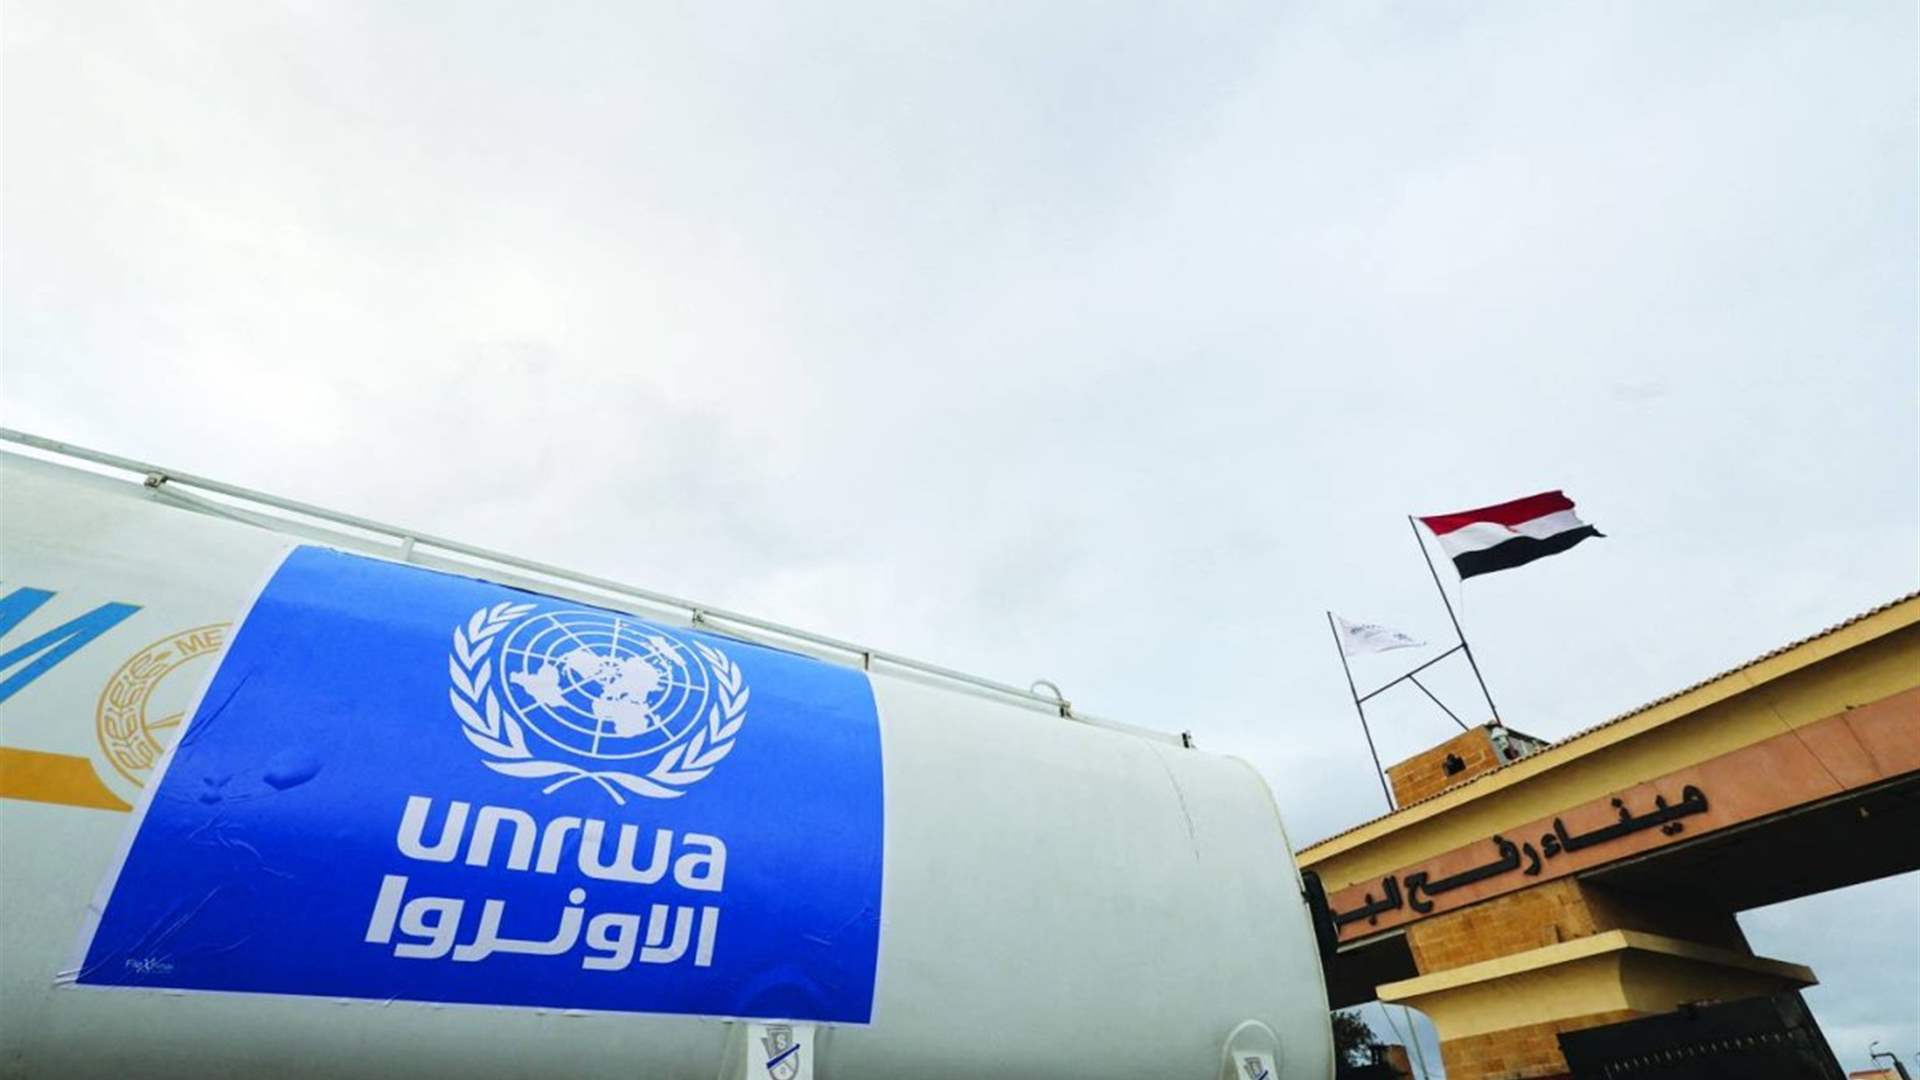 Spain announces a &euro;20 million aid to UNRWA